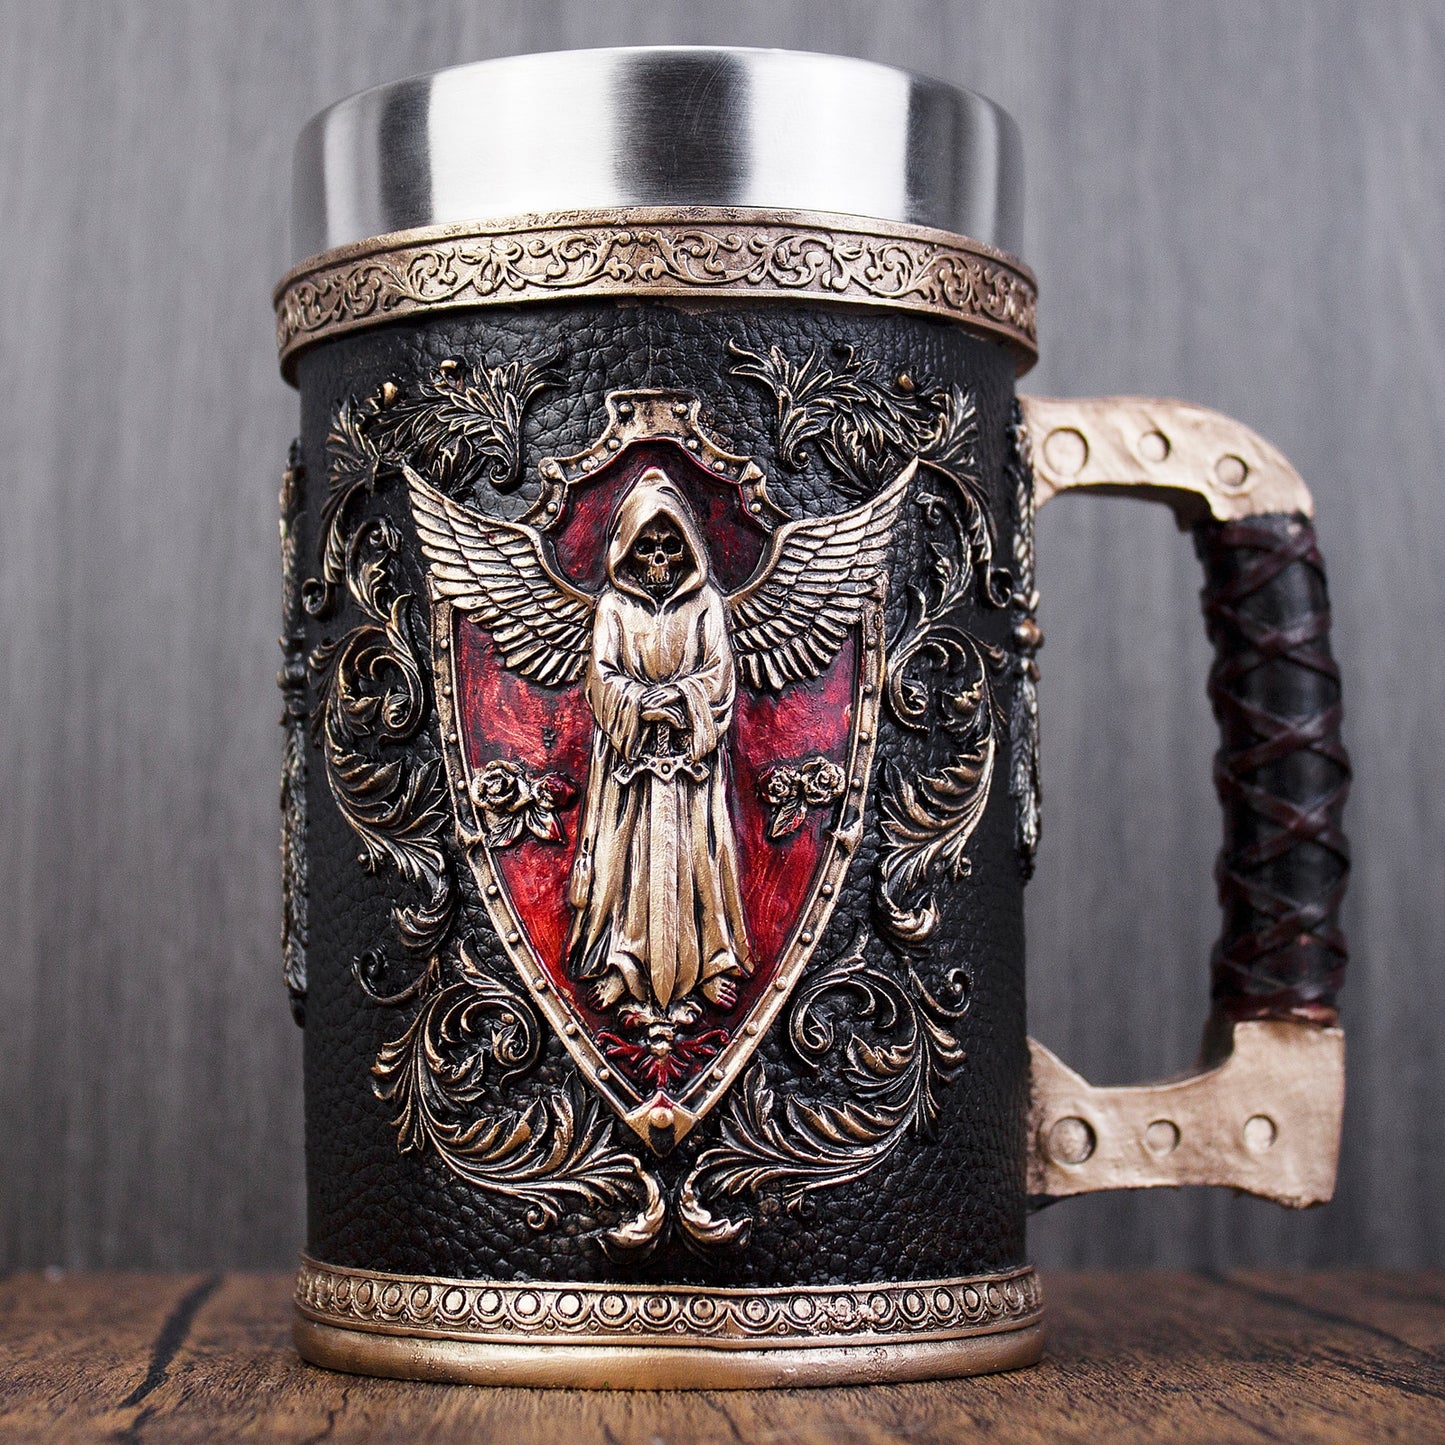 Medieval Grim Reaper inspired tankard of beer